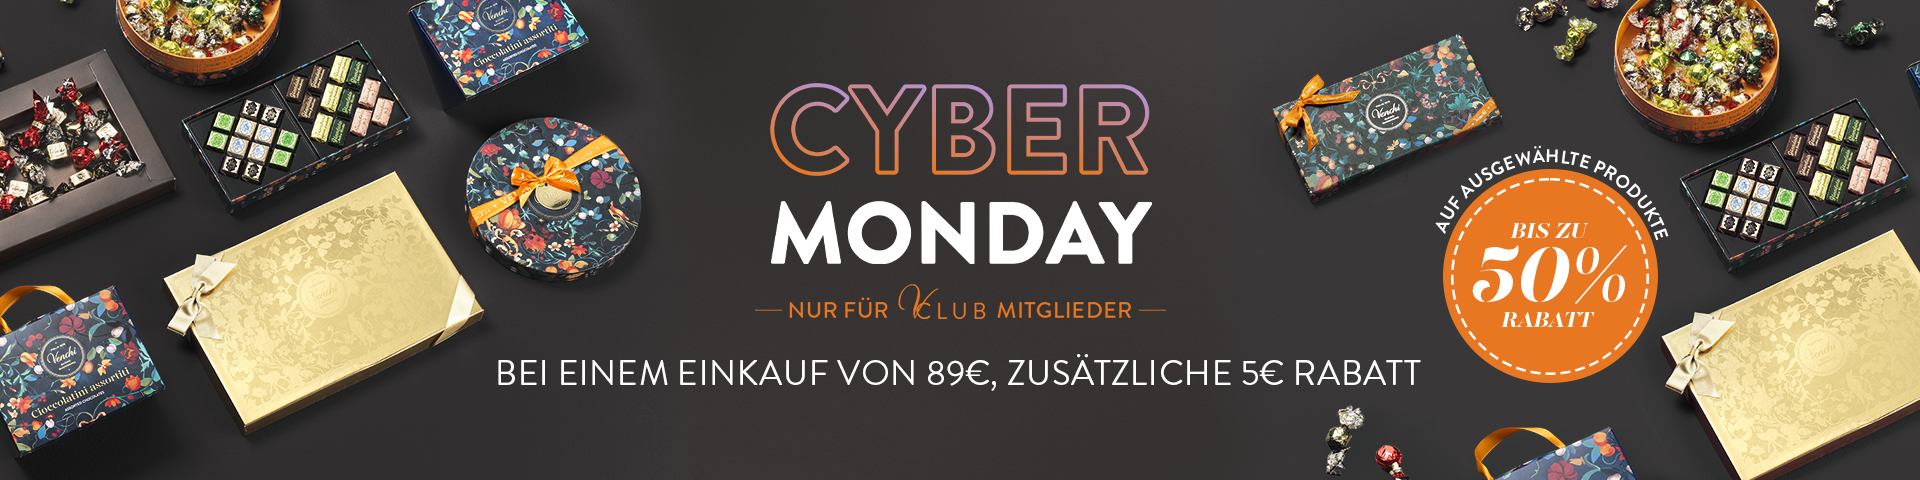 Cyber Monday nur fur V-Club mitglieder bei einem einkauf von 89€, zusatzliche 5€ rabatt